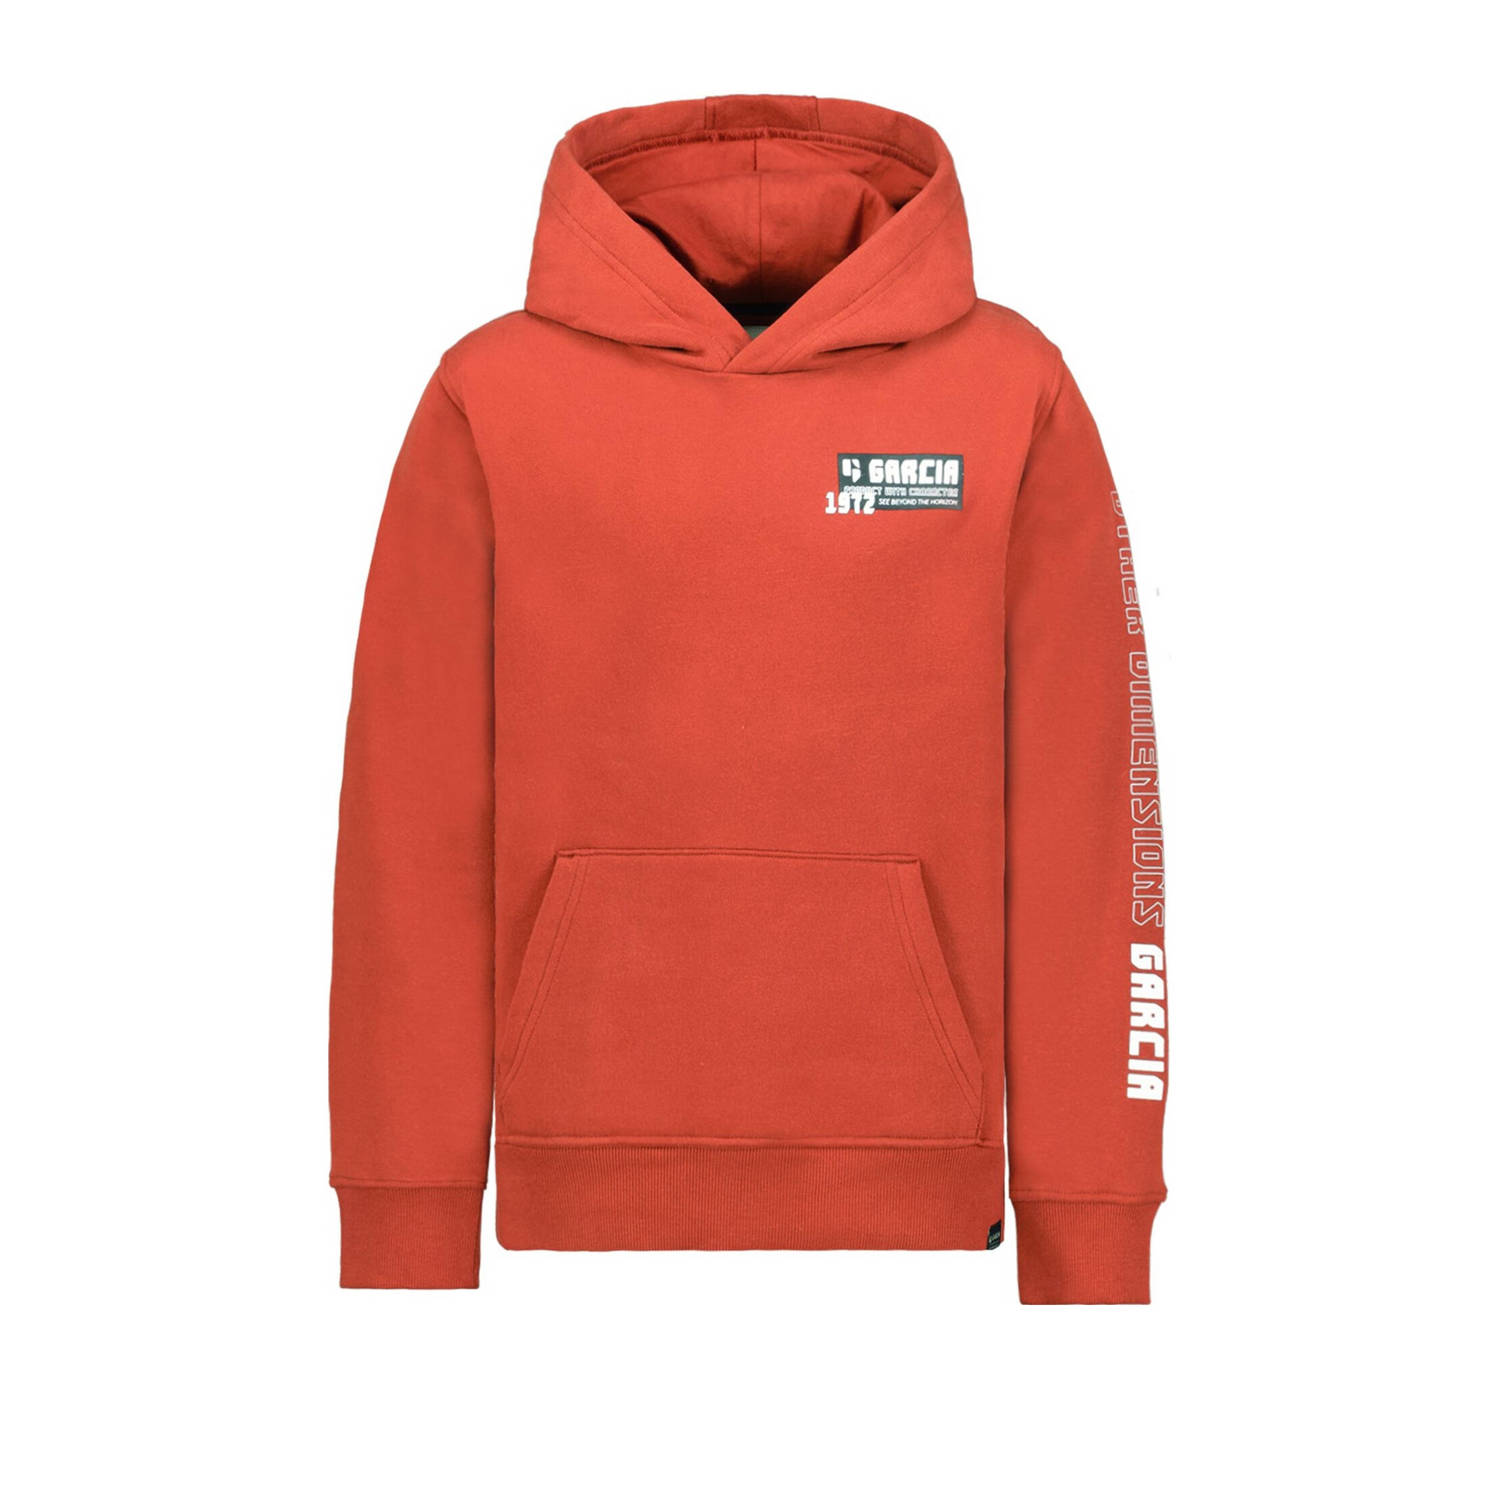 Garcia hoodie met printopdruk roodbruin Sweater Printopdruk 128 134